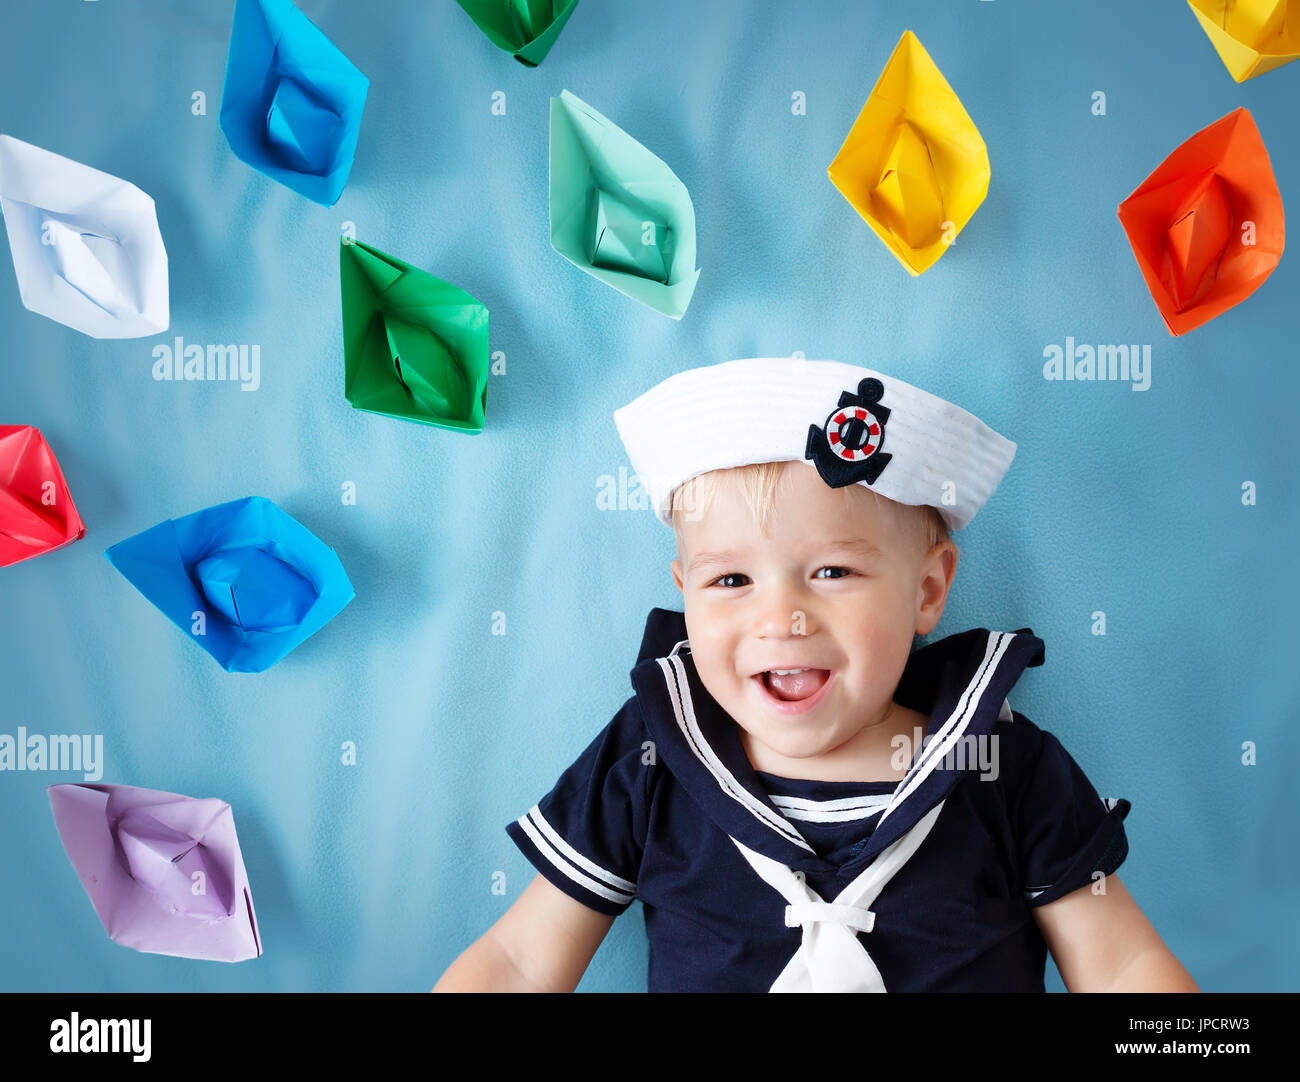 paper sailor hat